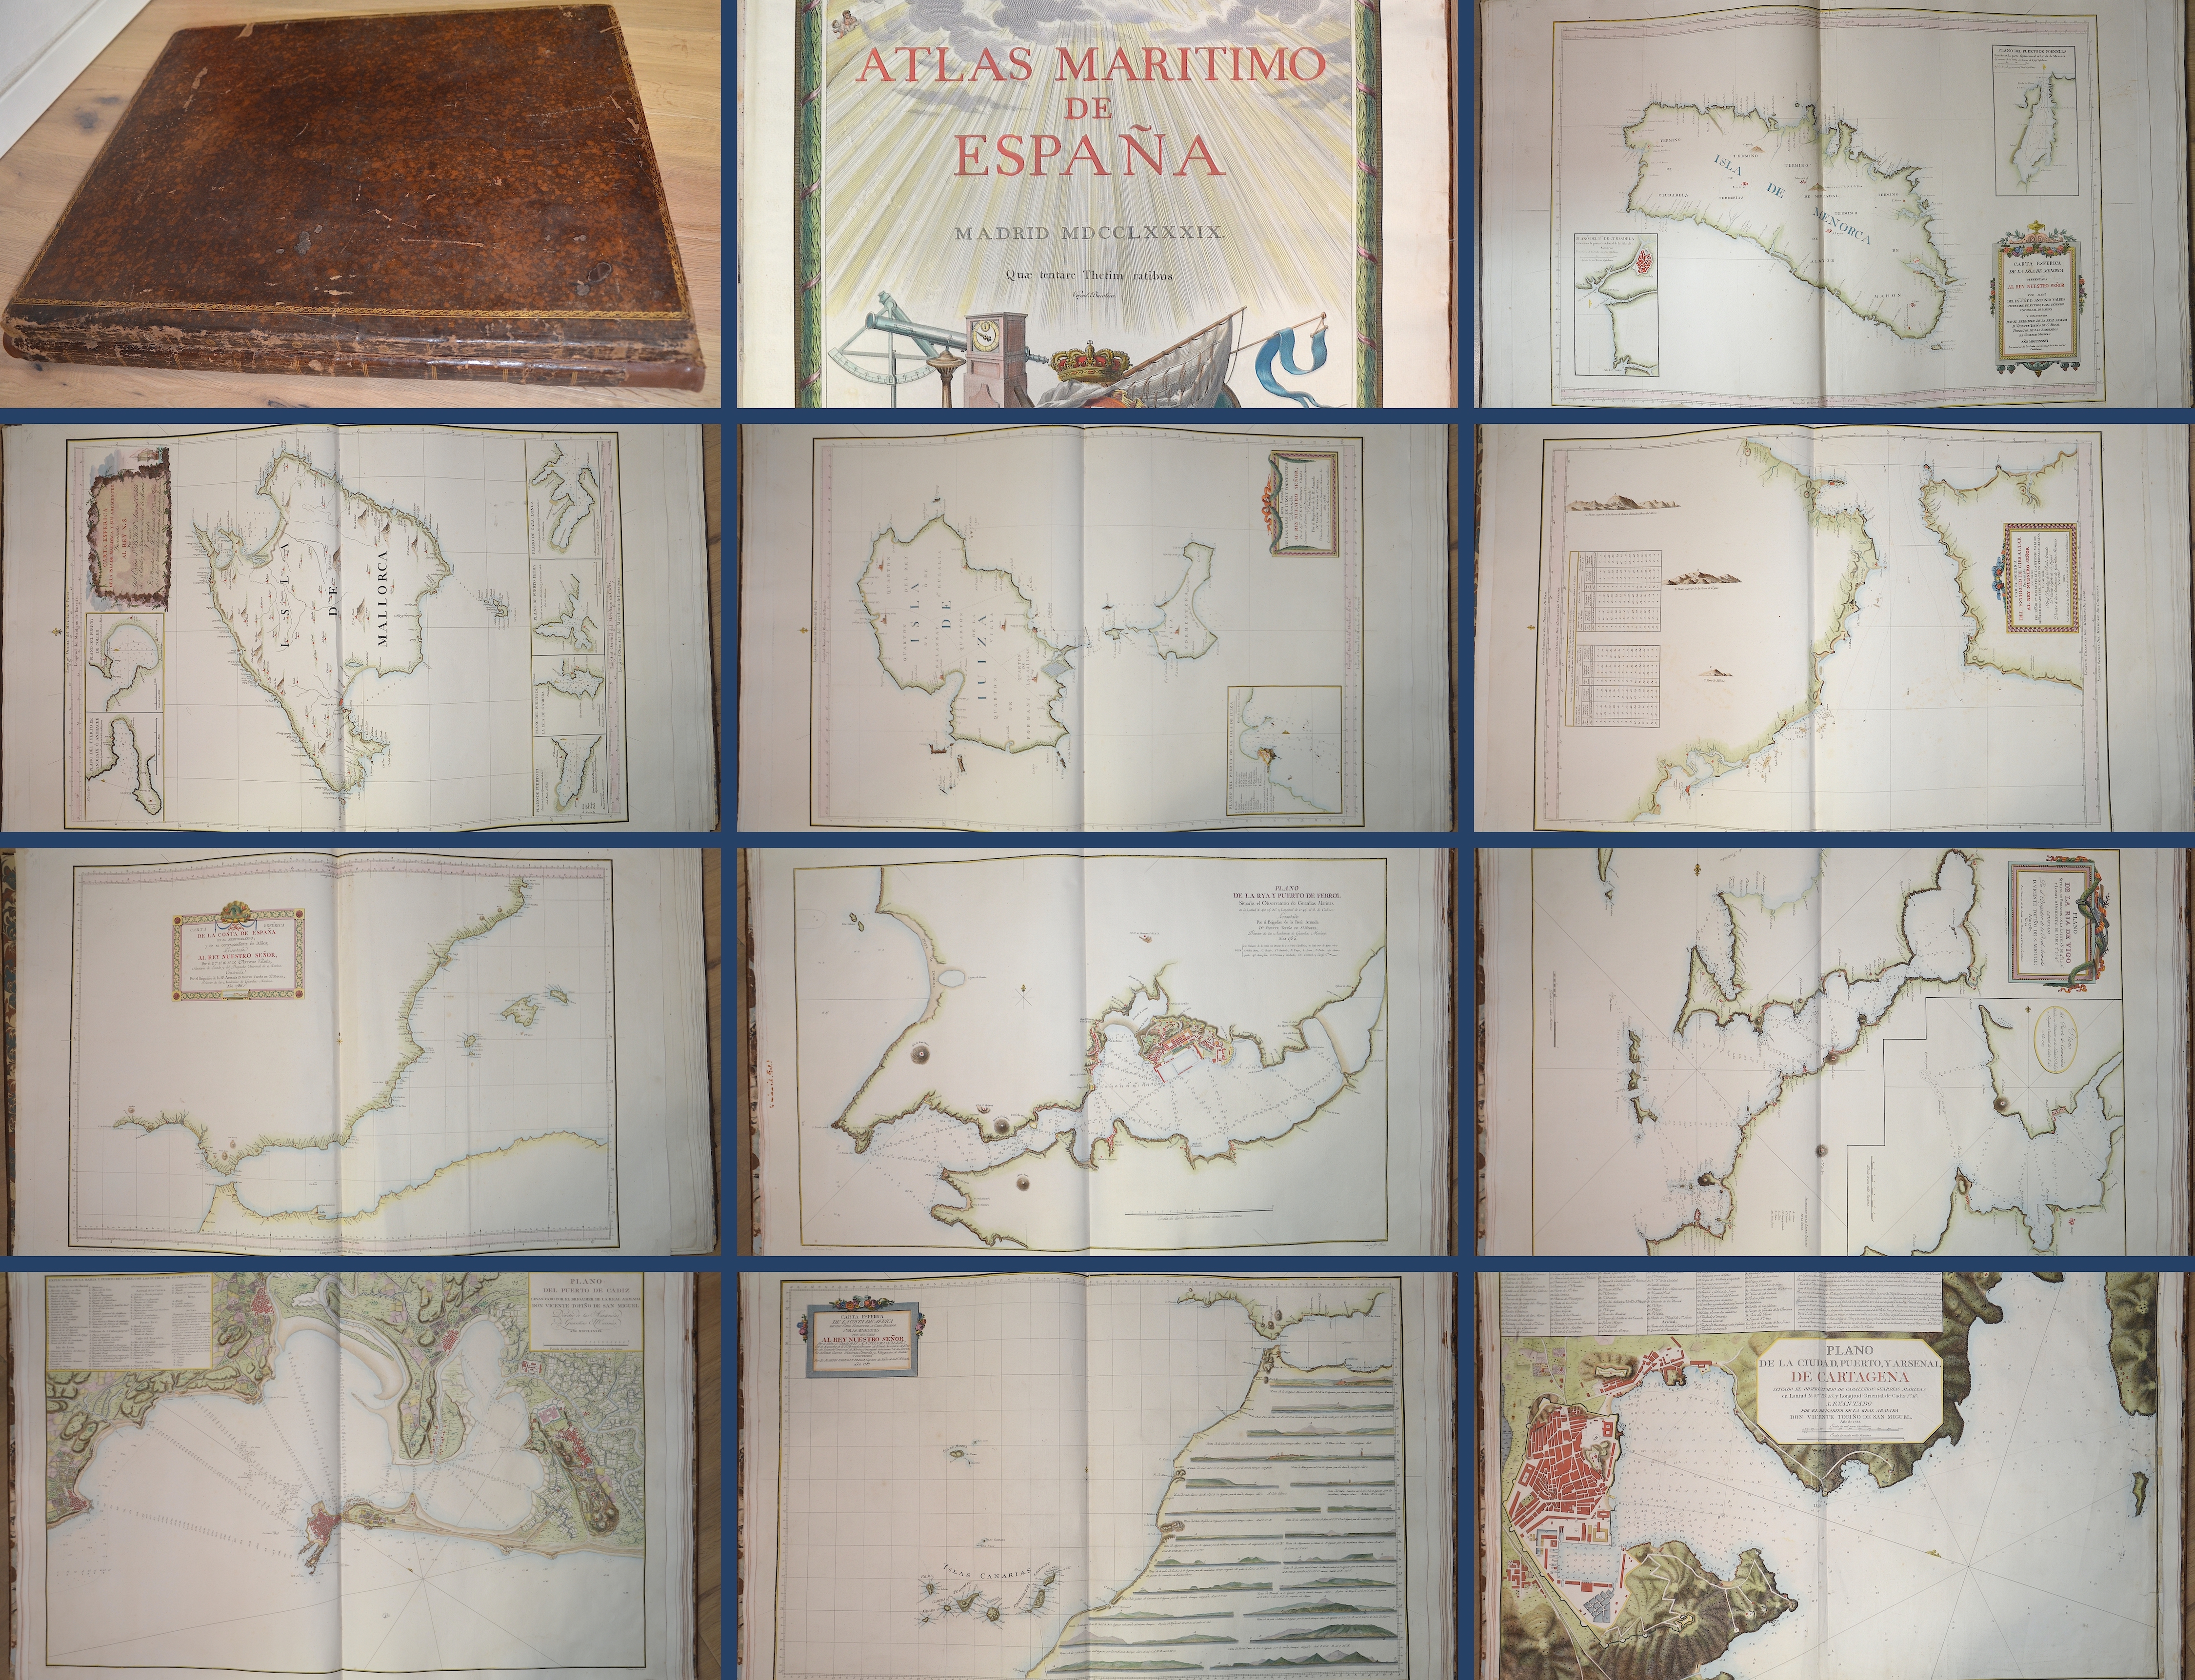 Tofiño de San Miguel Vincente Atlas Maritimo de Espana-Atlas hidrografico de las costas de España en el Mediterraneo